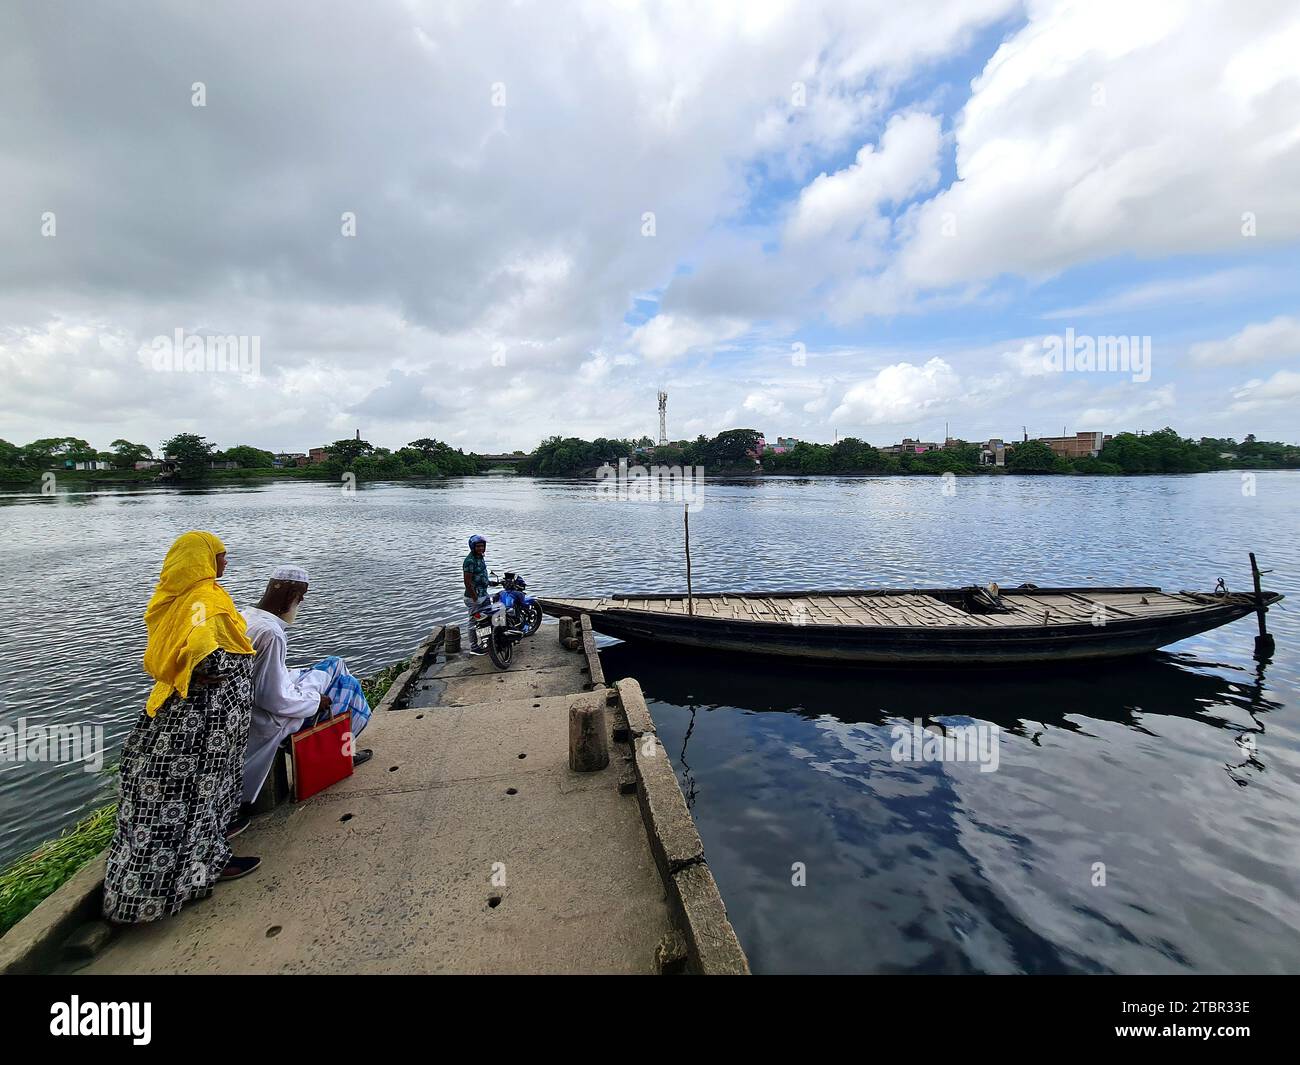 Gli abitanti dei villaggi rurali dell'India aspettano un'imbarcazione da trasporto locale nella zona lungo il fiume. Foto Stock